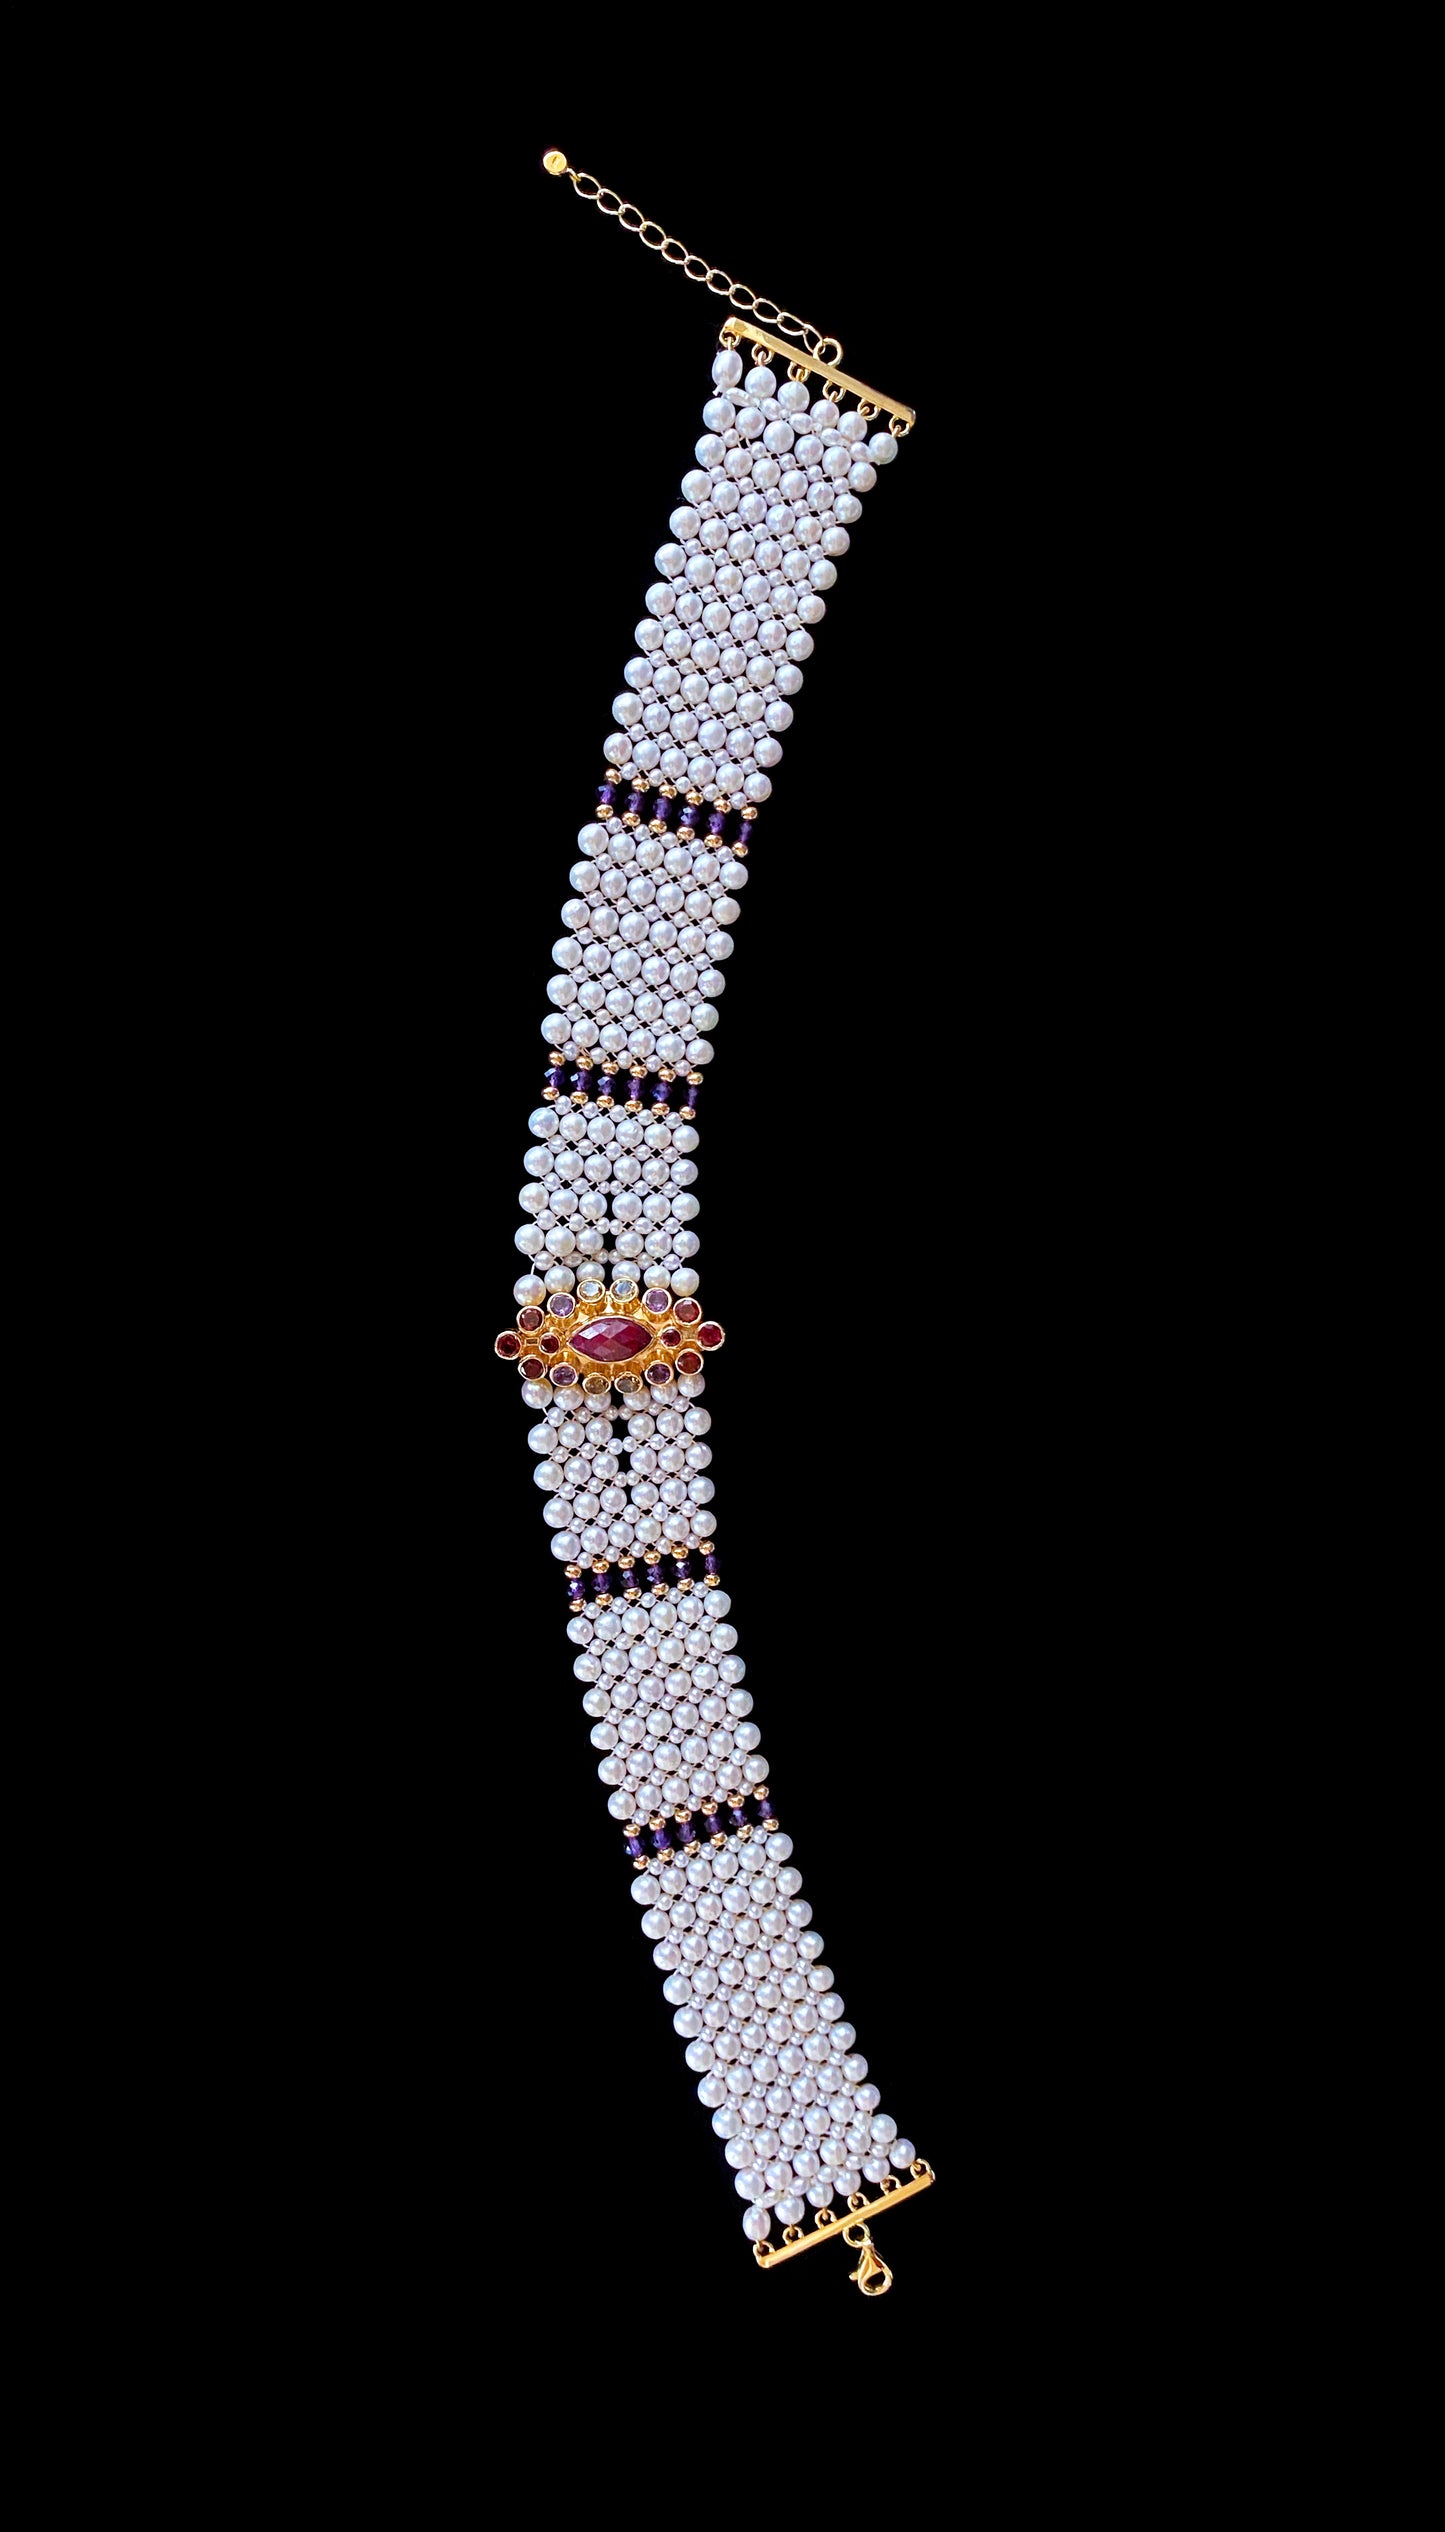 Woven Pearl Choker with Multi Color Semi Precious Stone Centerpiece